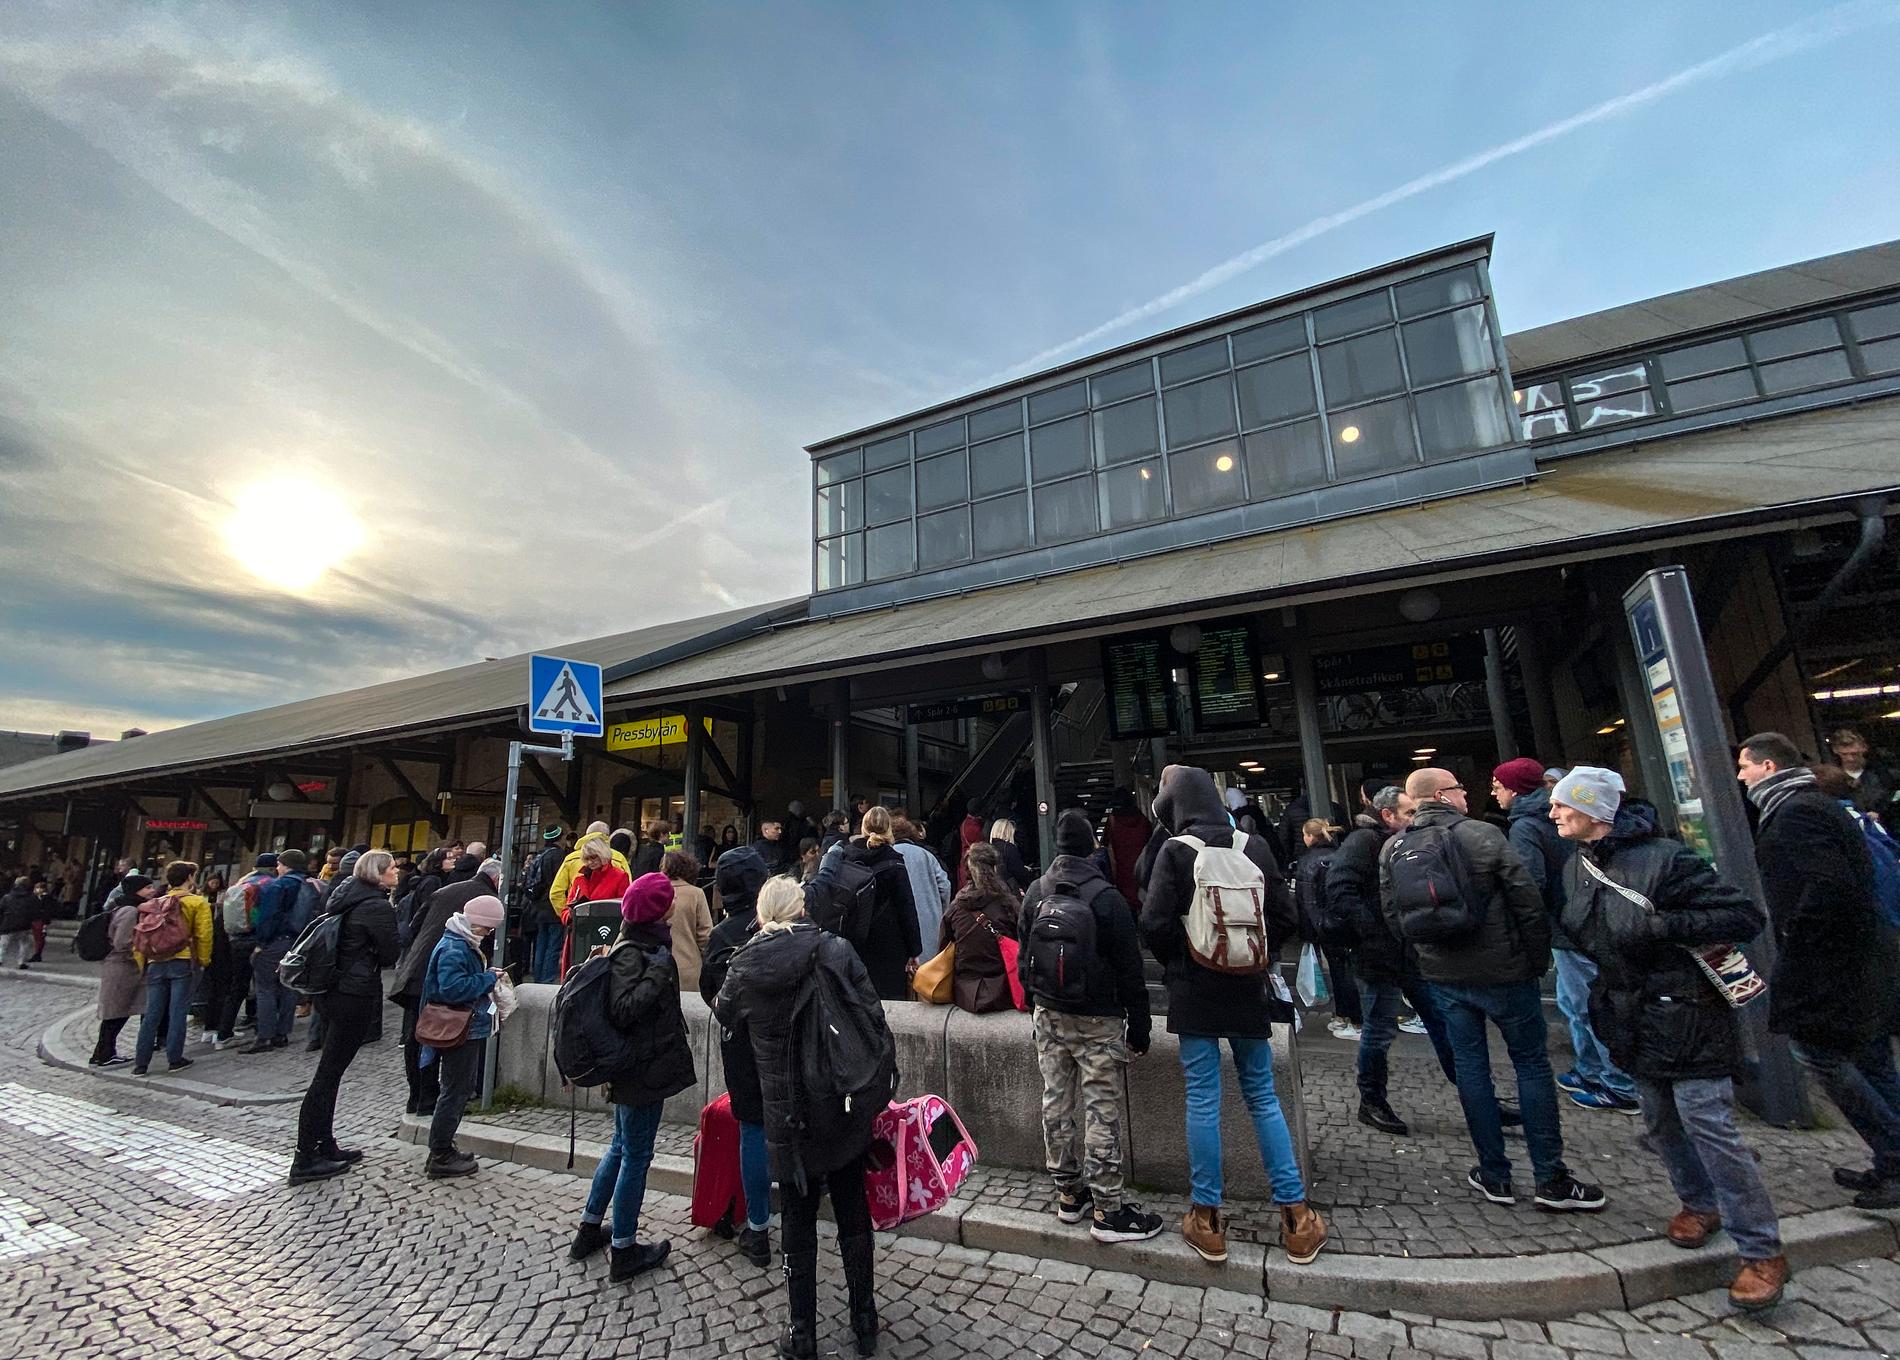  En svag halo på himlen över Lundf medan resenärer väntar på information gällande tågtrafiken mellan Lund C och Malmö efter ett signalfel i Burlöv.